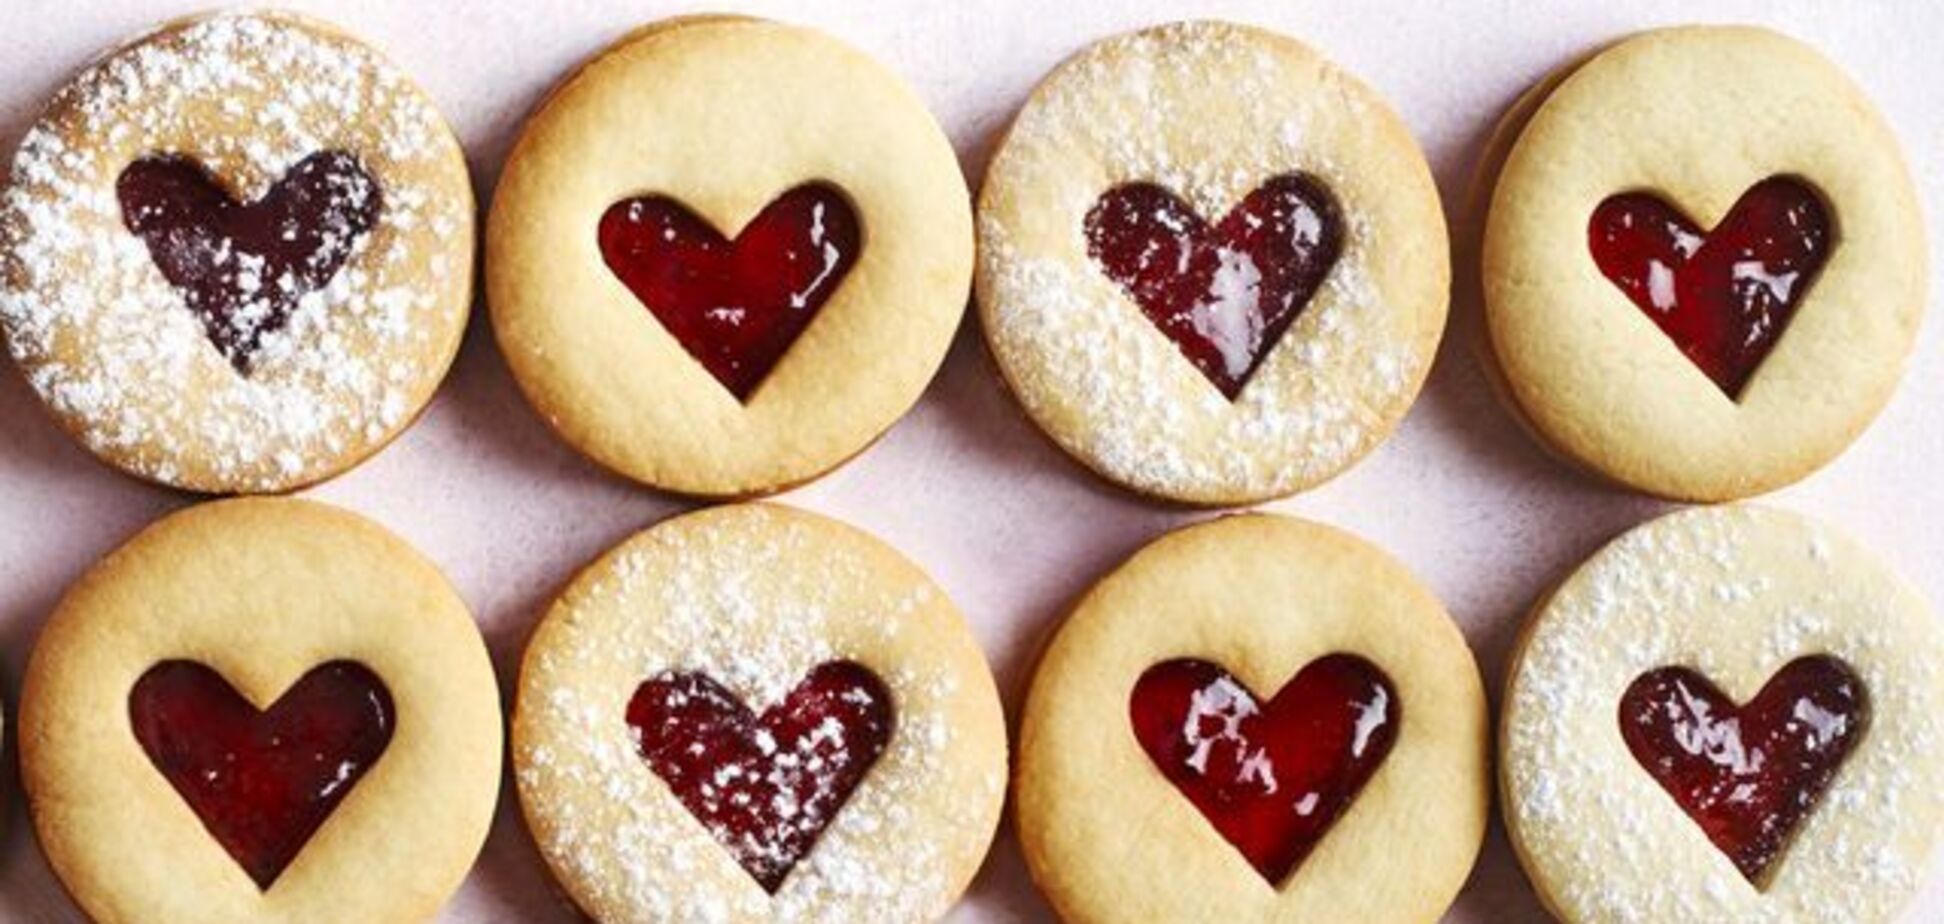 Печиво замість валентинки: як здивувати кохану людину смачним сюрпризом 